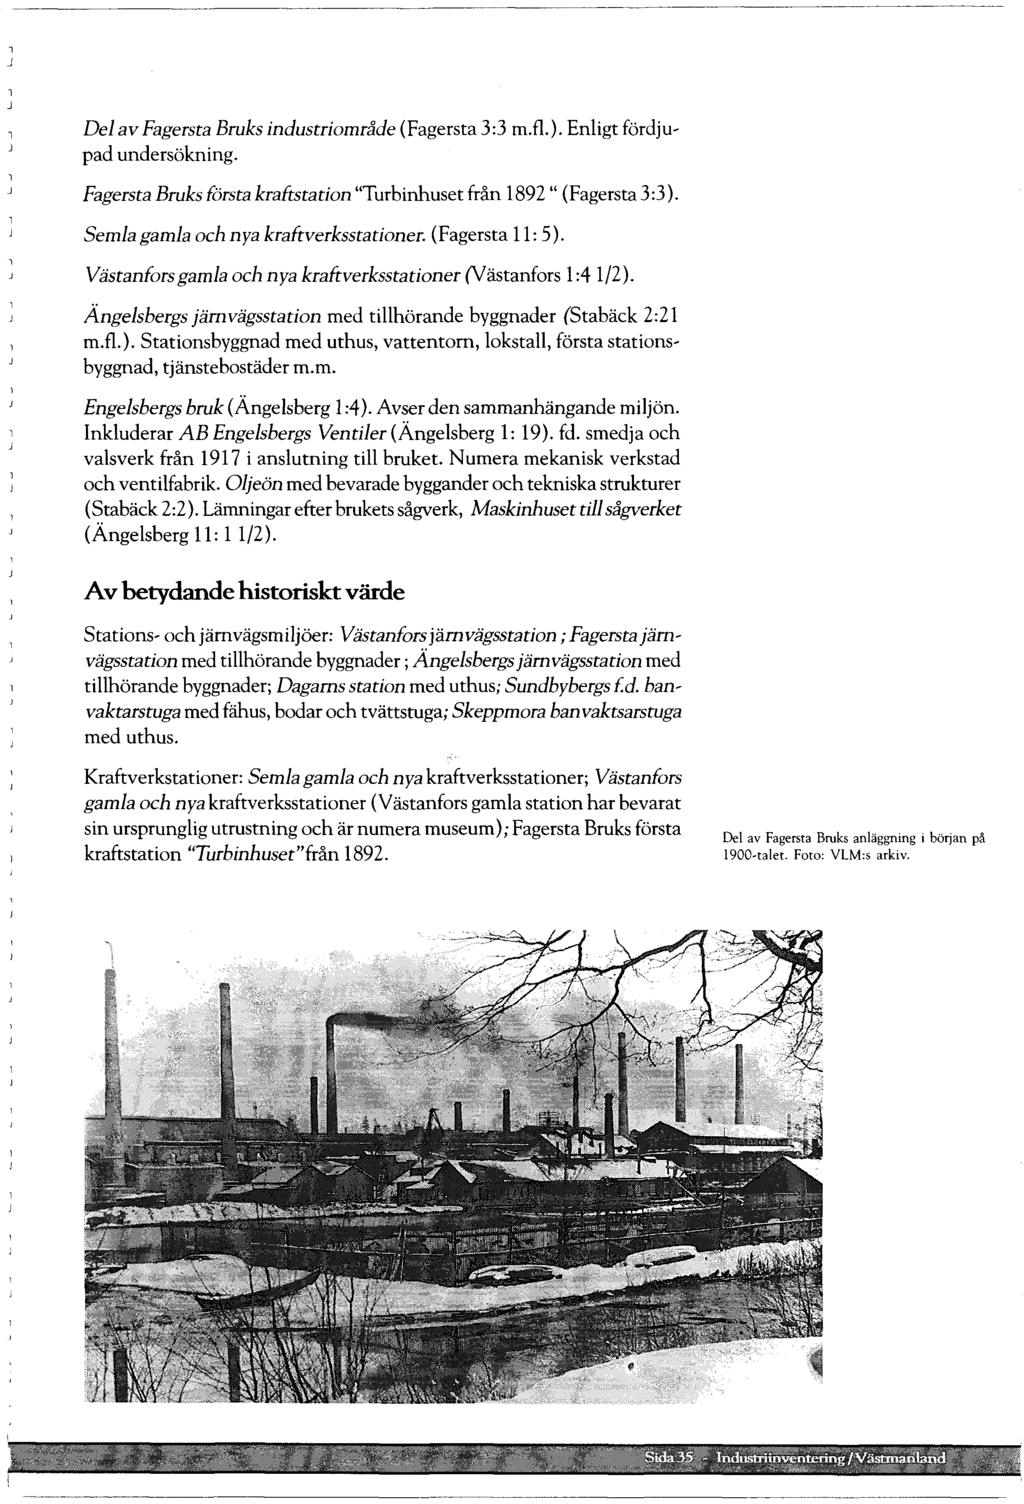 De av Fagersta Bruks industriområde (Fagersta 3:3 m.f.). Enigt fördju~ pad undersökning. Fagersta Bruks första kraftstation "Turbinhusetfrån 1892 " (Fagersta3:3).